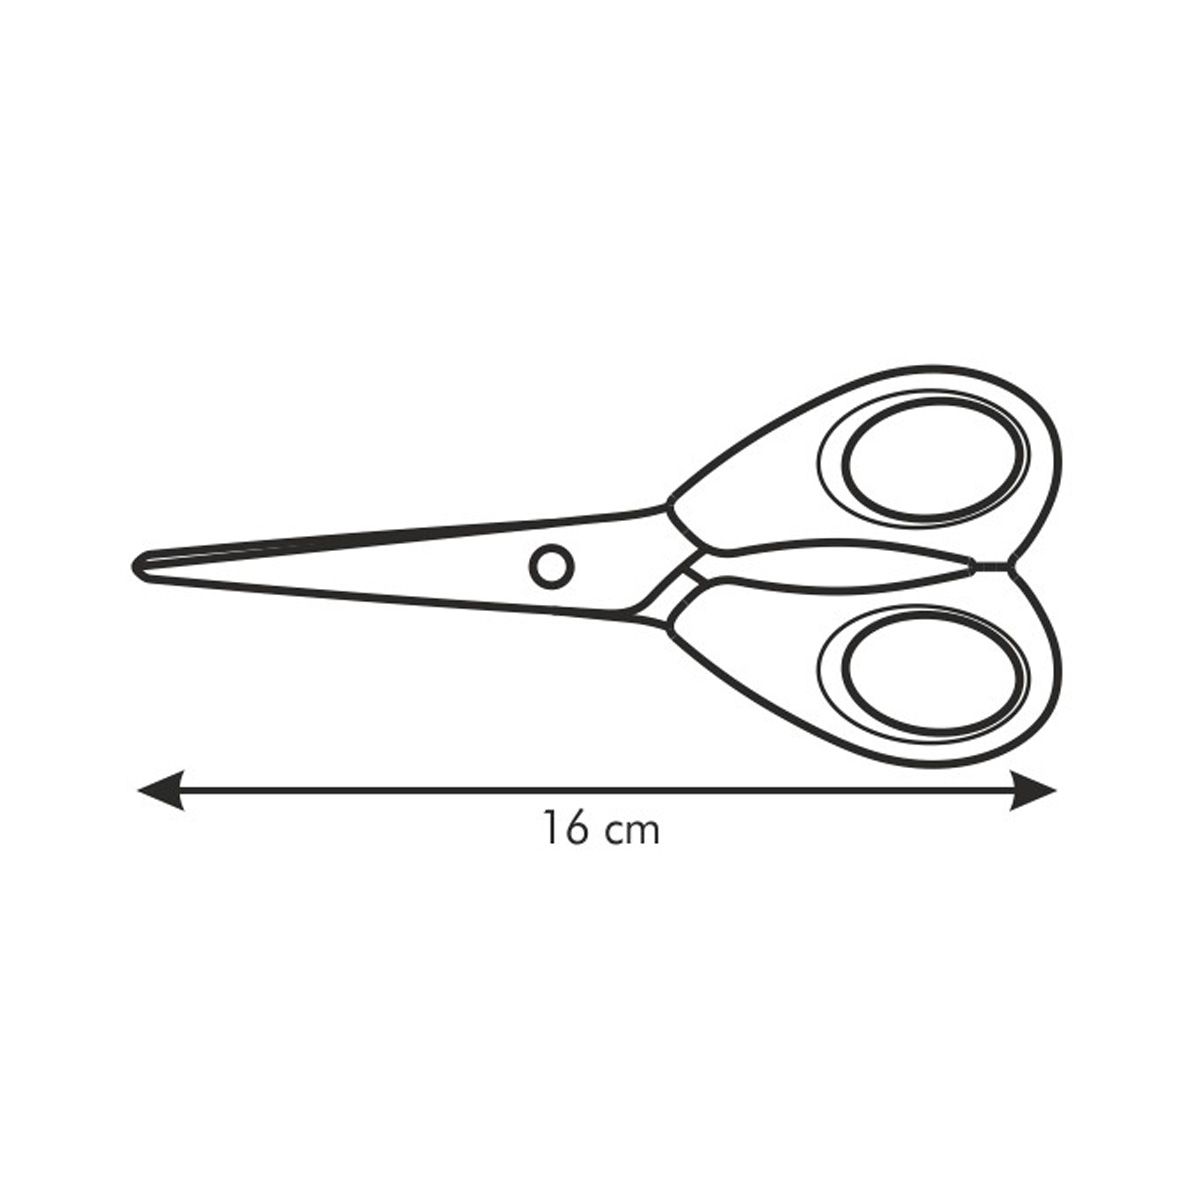 Nożyce do użytku domowego PRESTO 16 cm